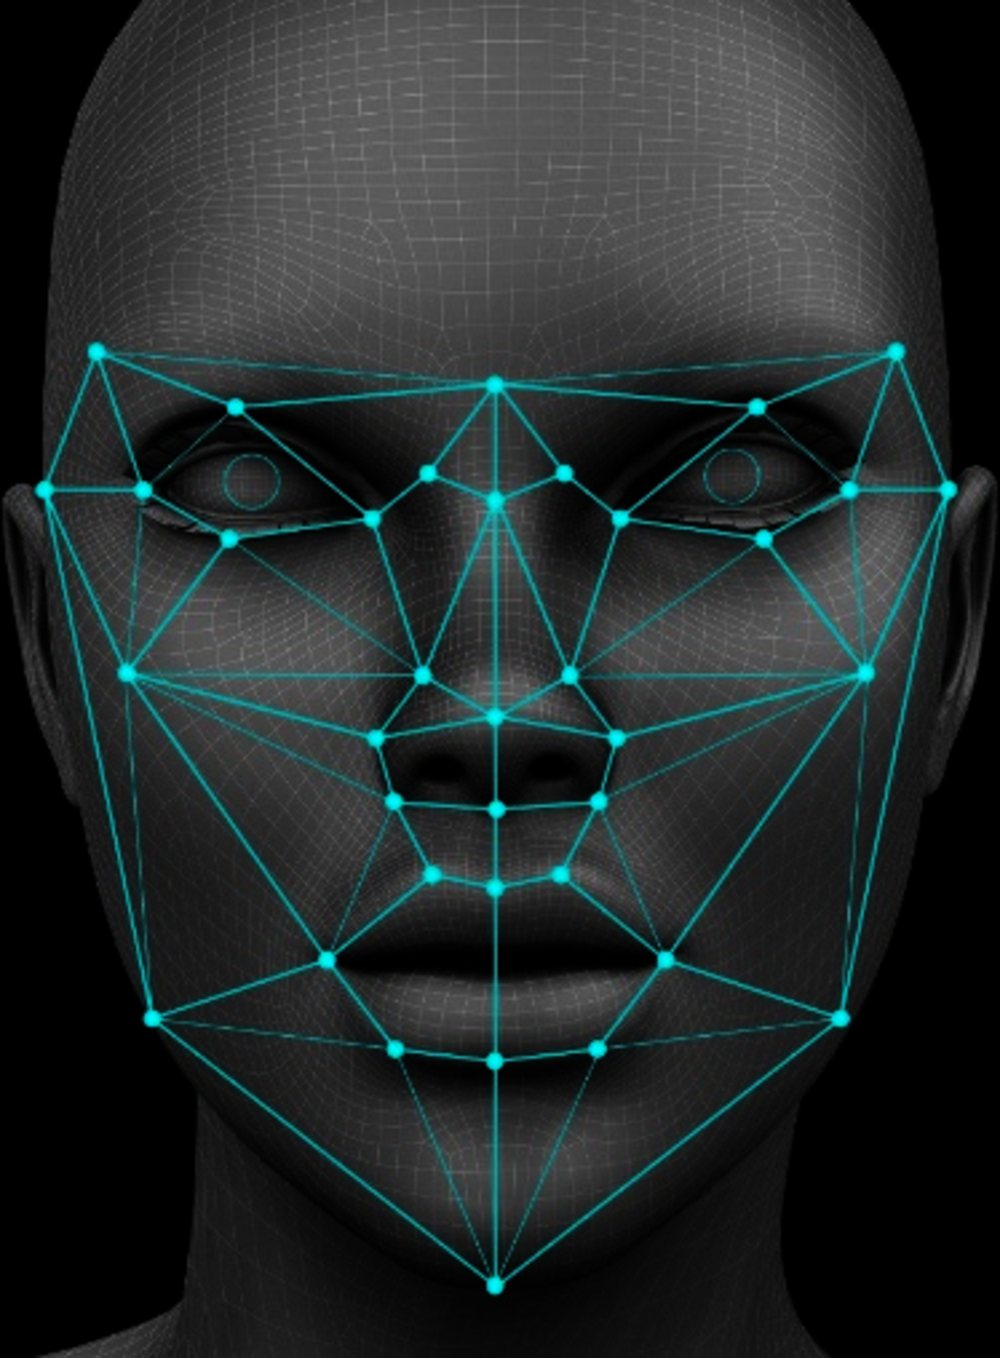 Abbildung 3.4. Veranschaulichung einer Gesichtserkennungssoftware